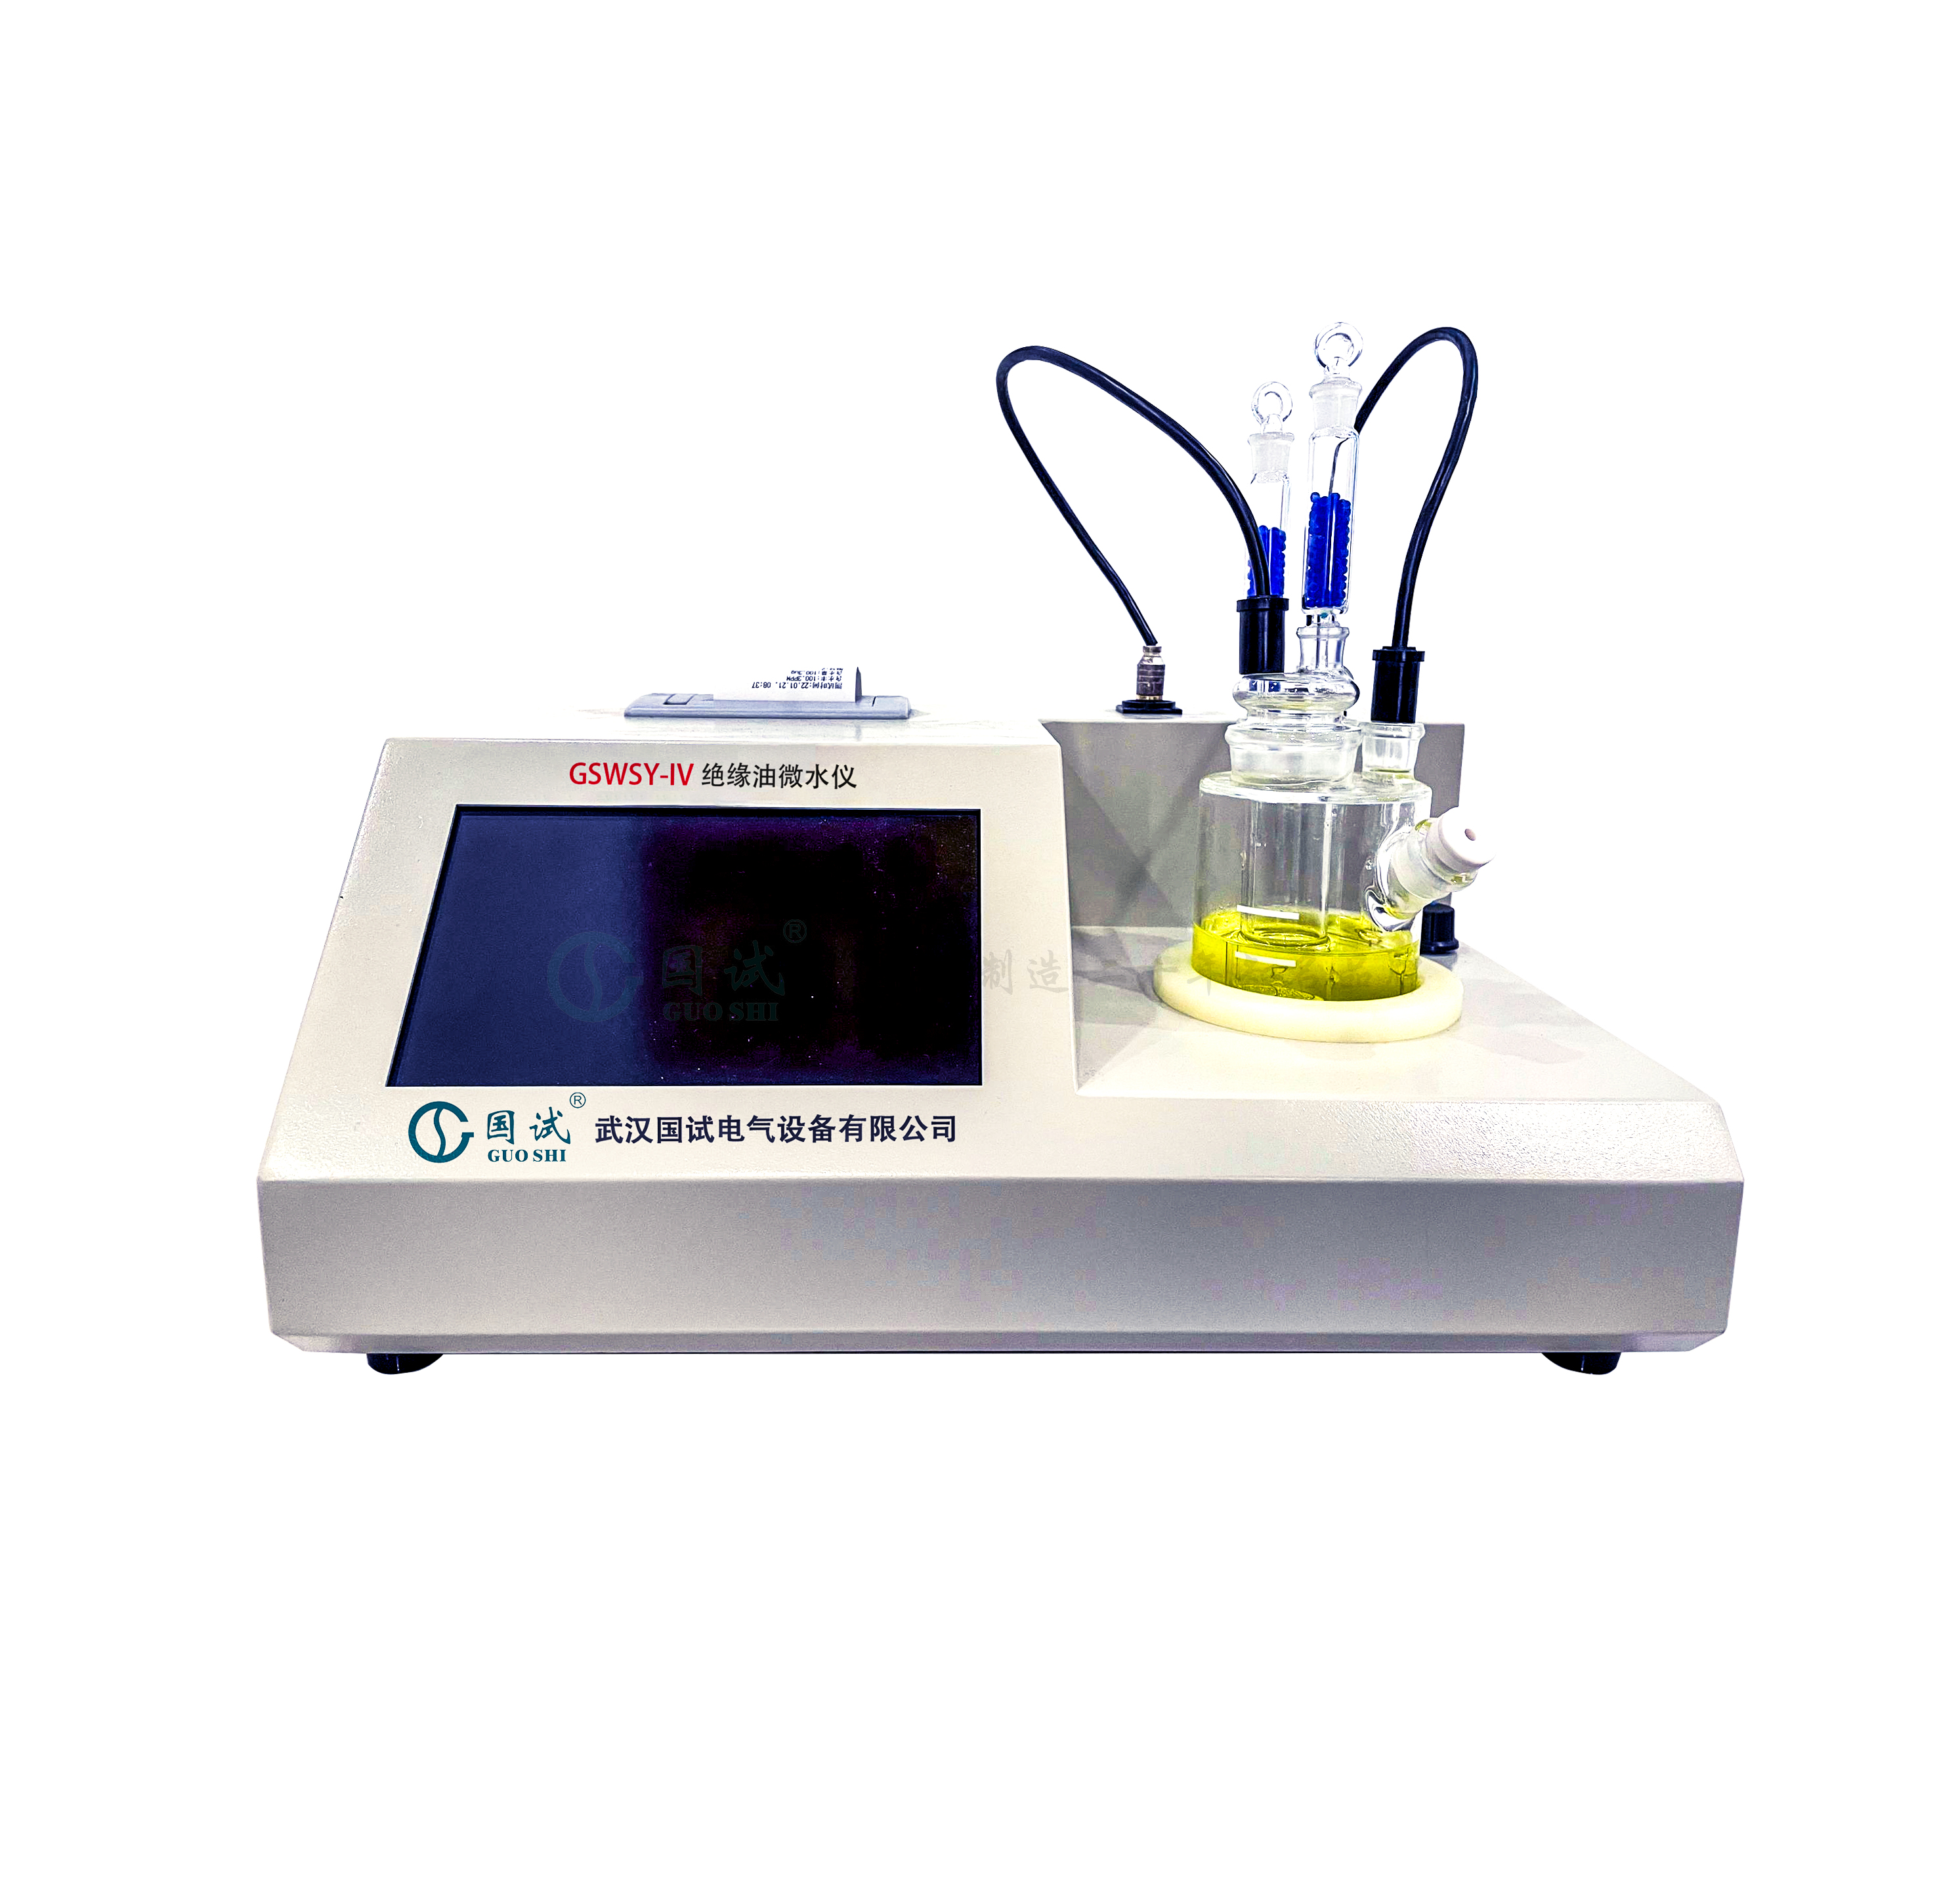 GSWSY-IV微量水分测试仪